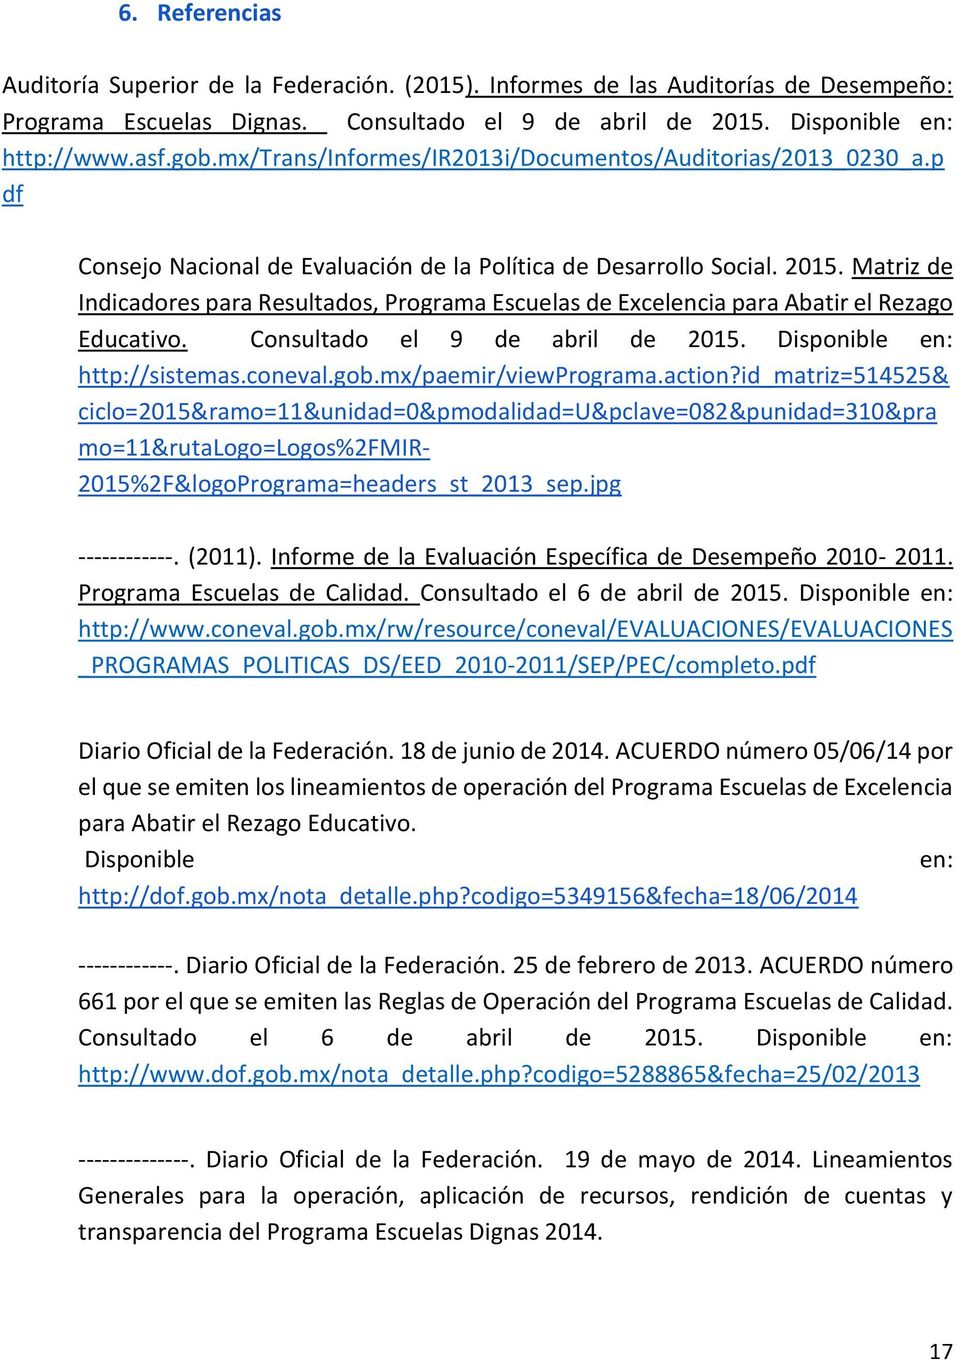 Matriz de Indicadores para Resultados, Programa Escuelas de Excelencia para Abatir el Rezago Educativo. Consultado el 9 de abril de 2015. Disponible en: http://sistemas.coneval.gob.